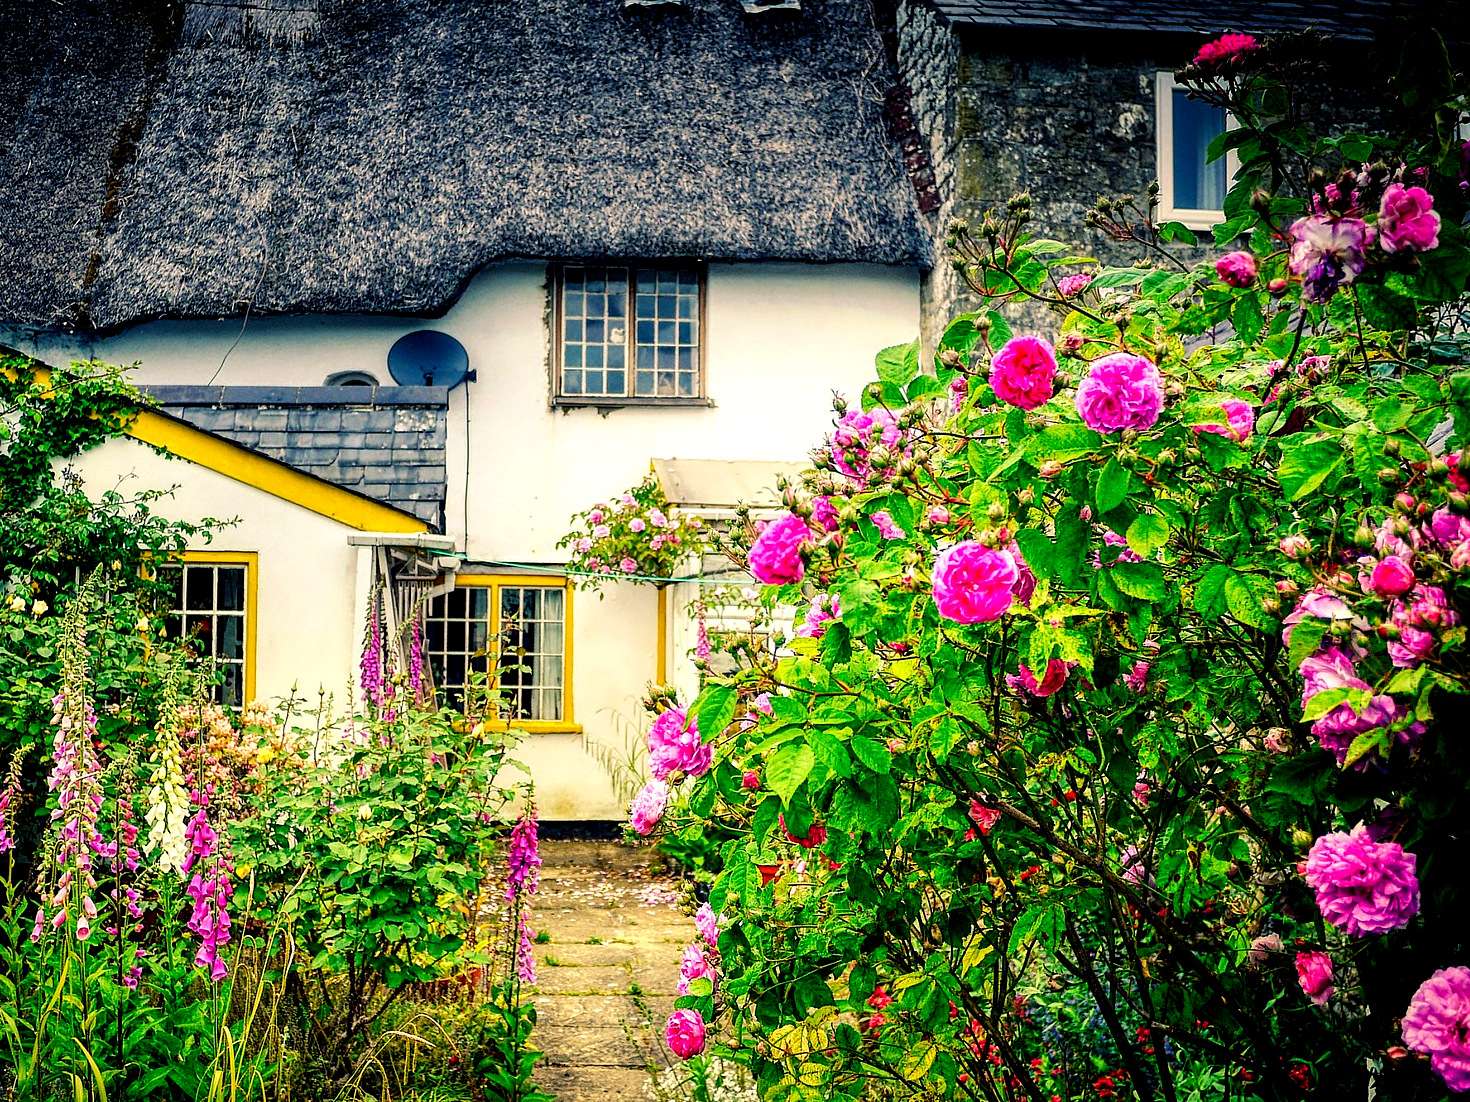 バラに囲まれた古い家々 ジグソーパズルオンライン